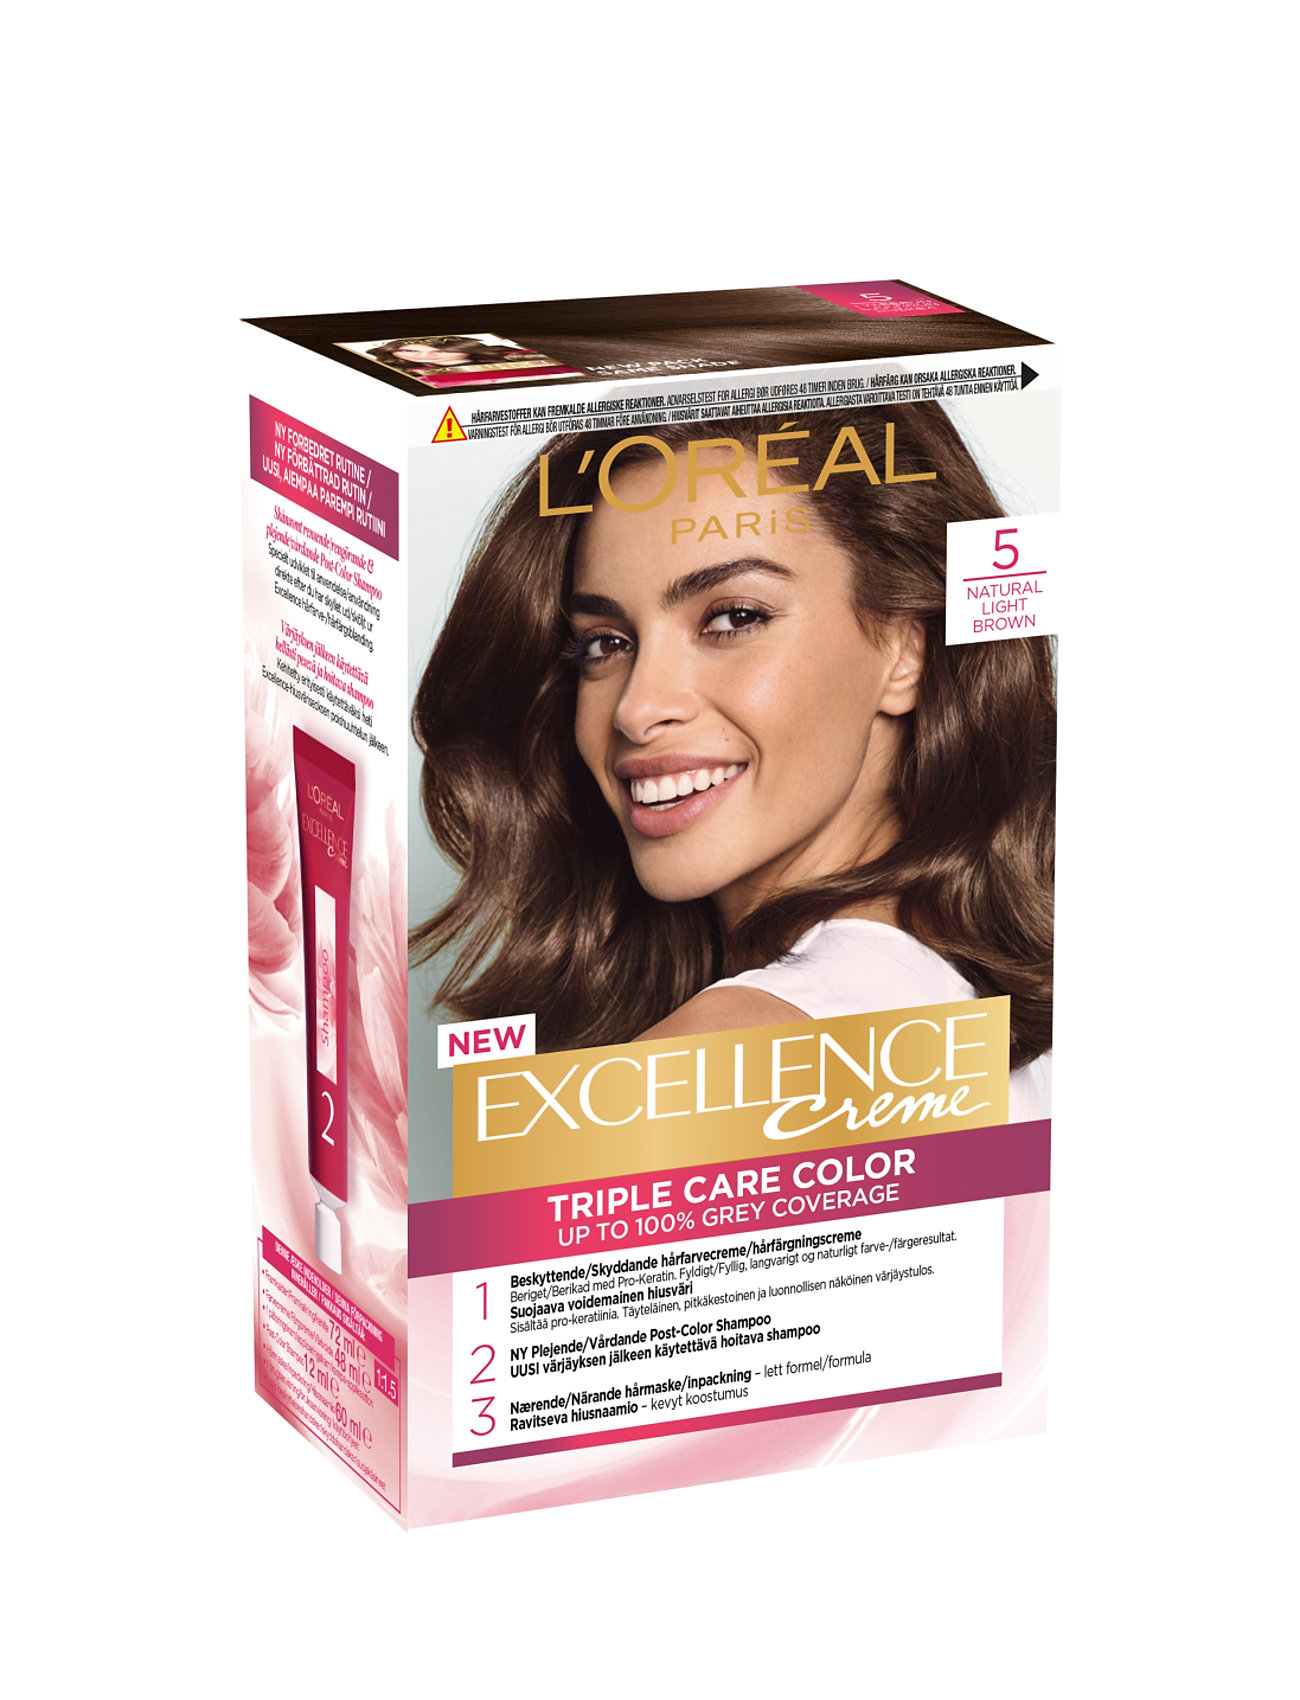 L'oréal Paris Excellence Color Cream Kit 5 Natural Light Brown Beauty Women Hair Care Color Treatments Nude L'Oréal Paris